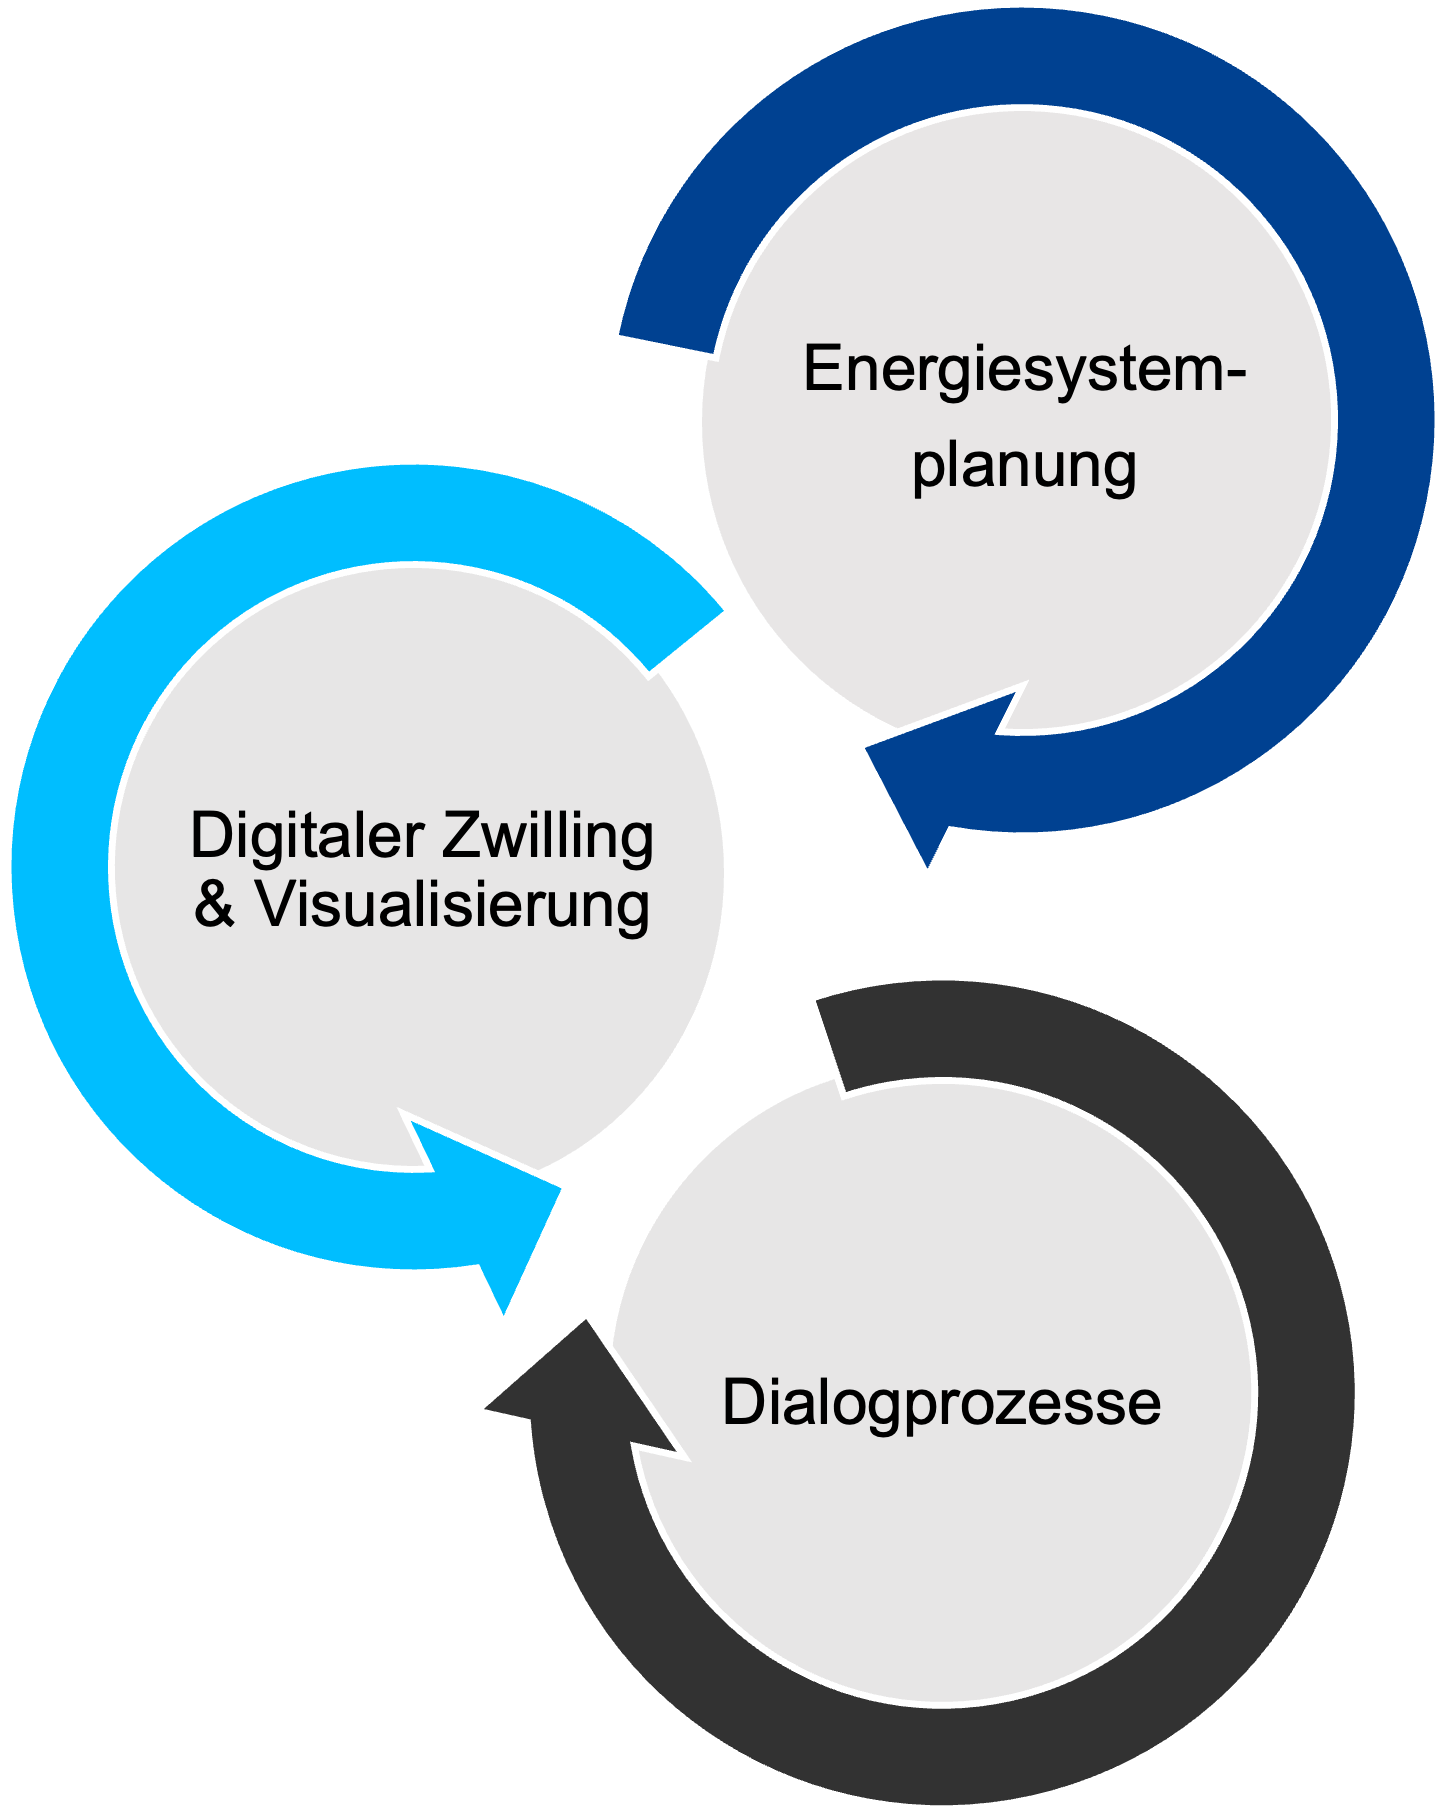 Verknüpfte Darstellung der drei Hauptprozesse: Energiesystemplanung, Digitaler Zwilling & Visualisierung, Dialogprozesse.